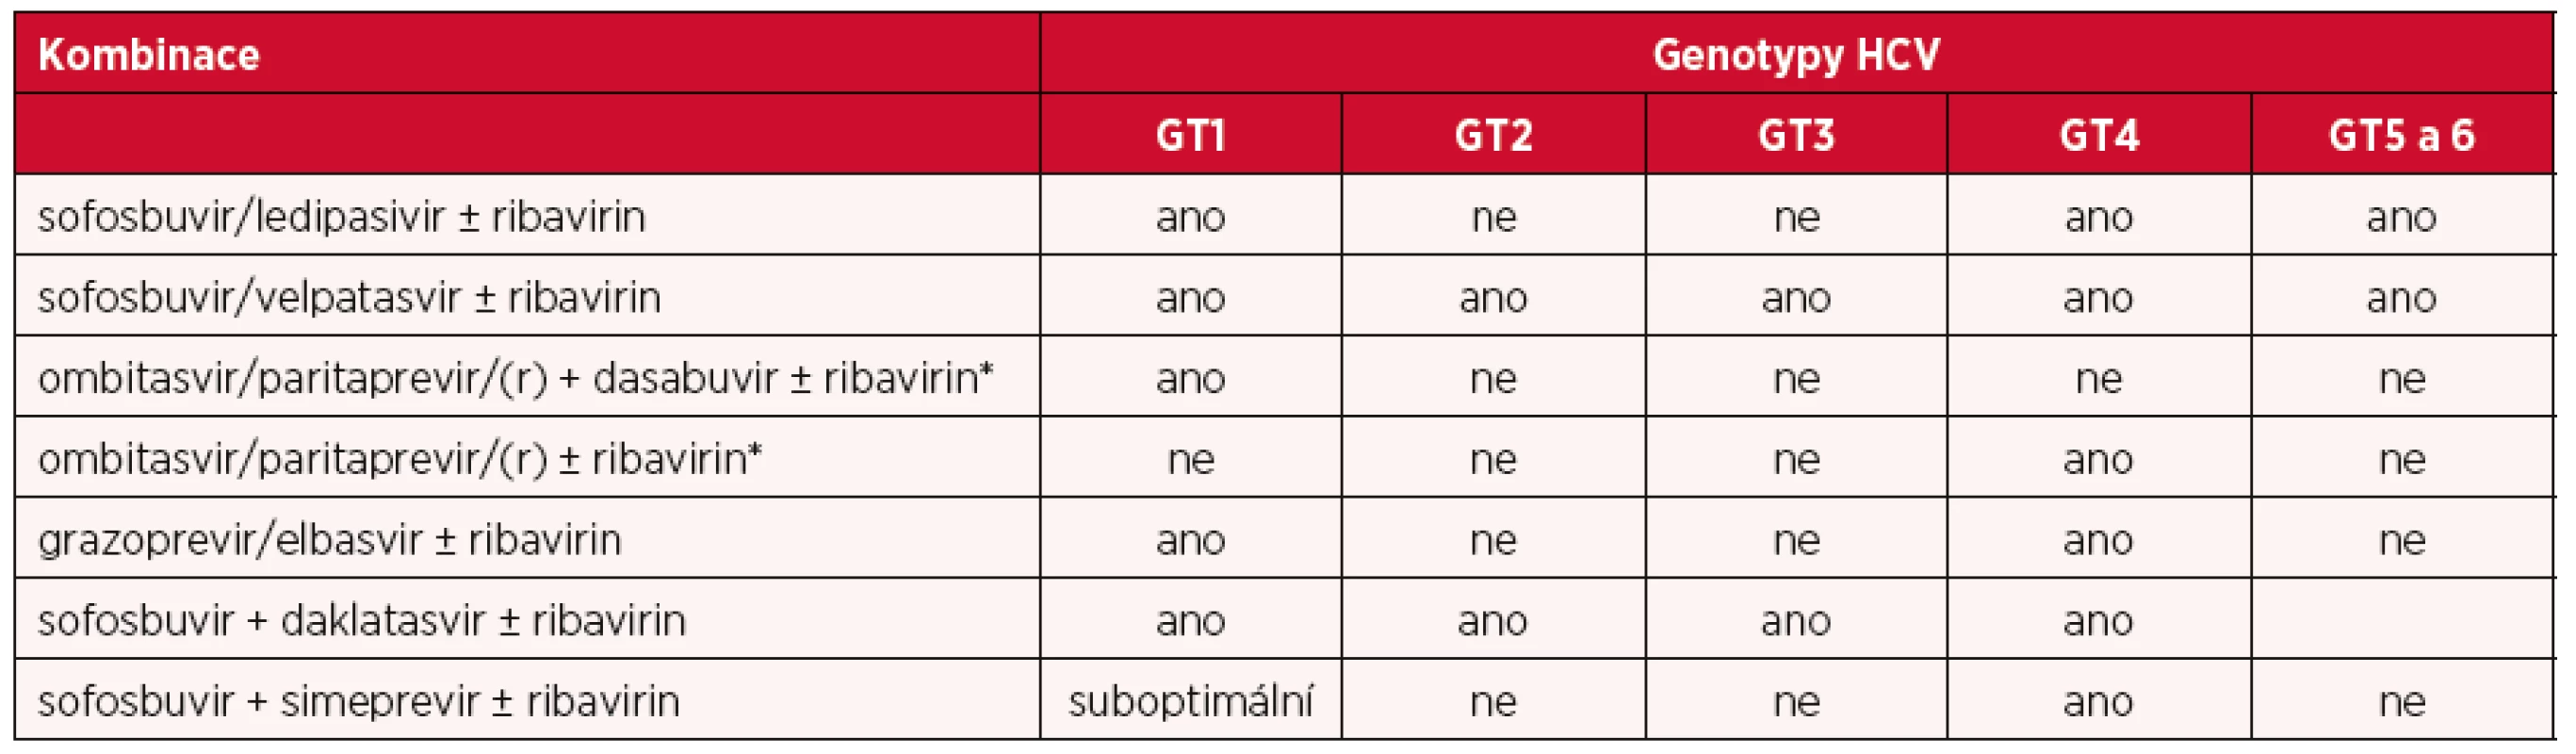 Varianty IFN-free režimů pro léčbu HCV infekce genotypem 1 až 6 – v současné době v ČR doporučené a používané